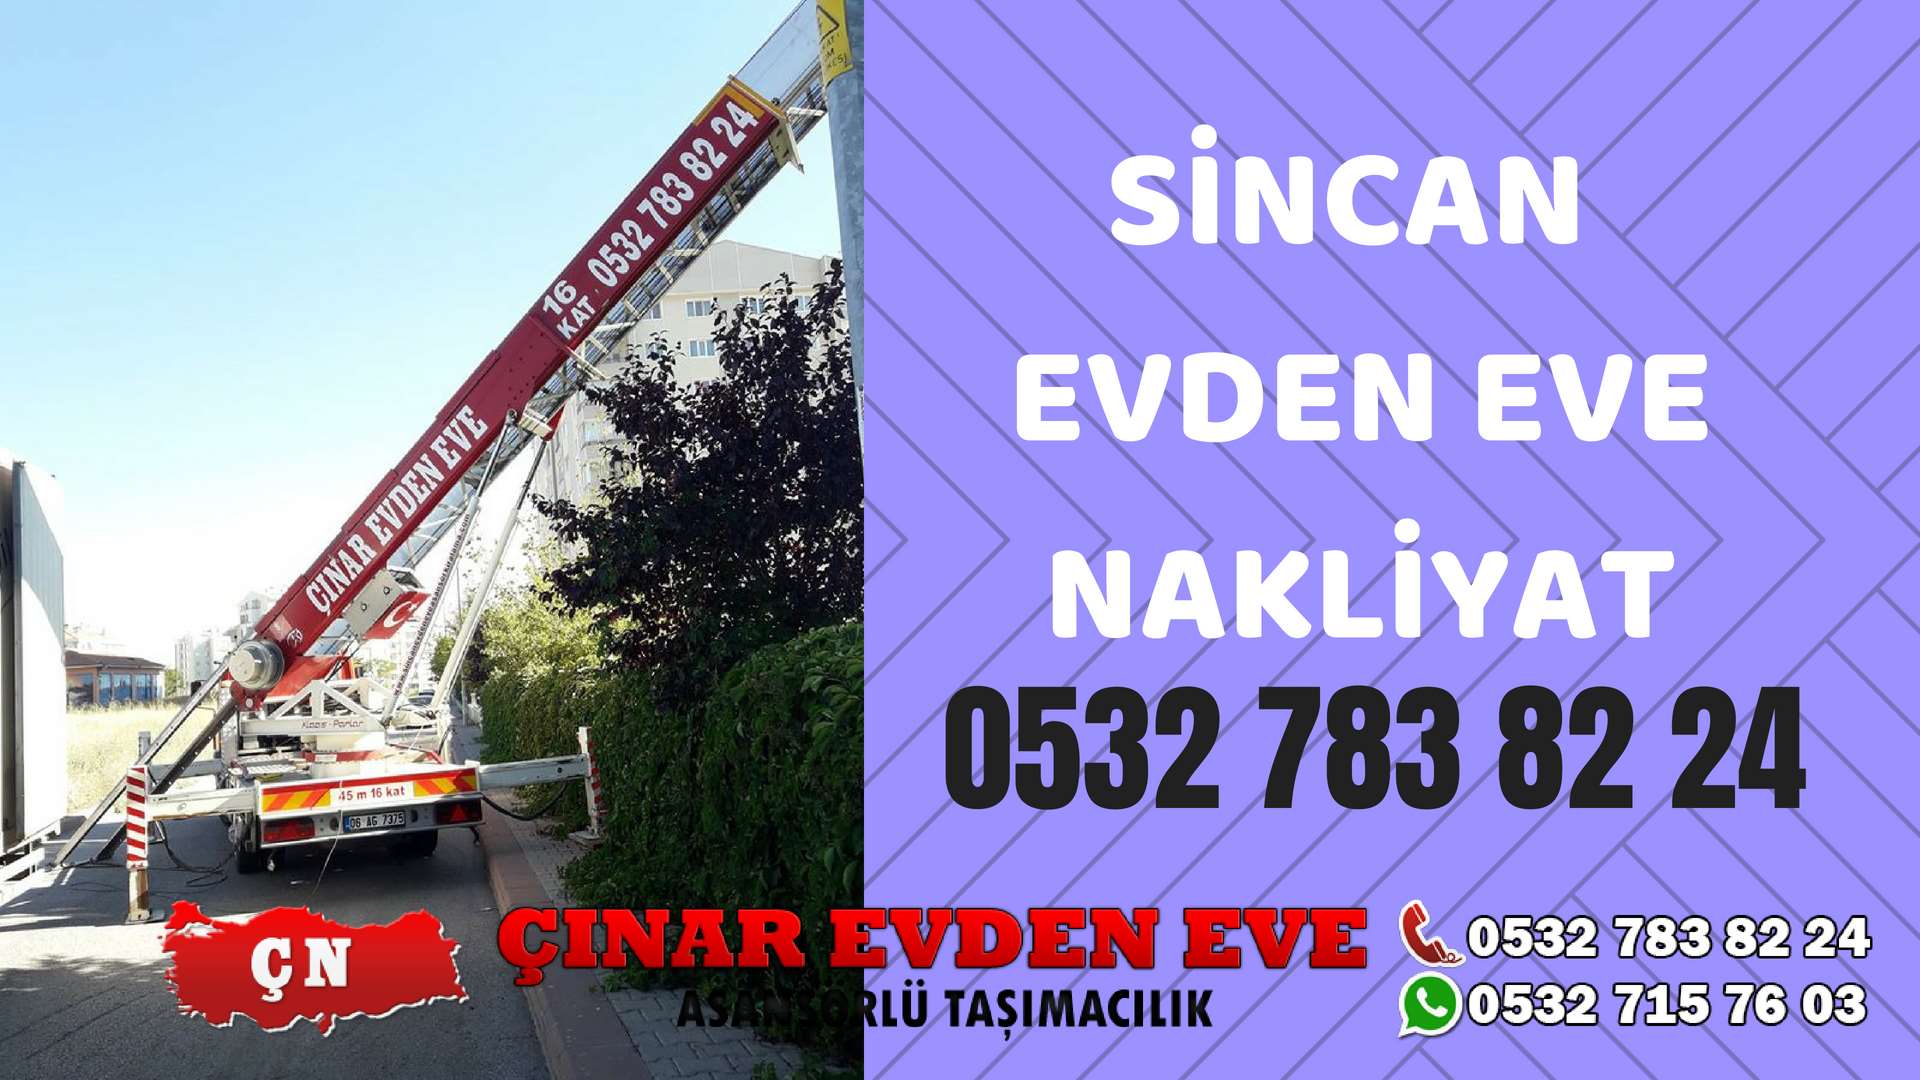 Ankara Siteler Sincan Evden Eve Nakliyat, Asansörlü Taşıma Çınar Nakliyat Sincan 0532 715 76 03